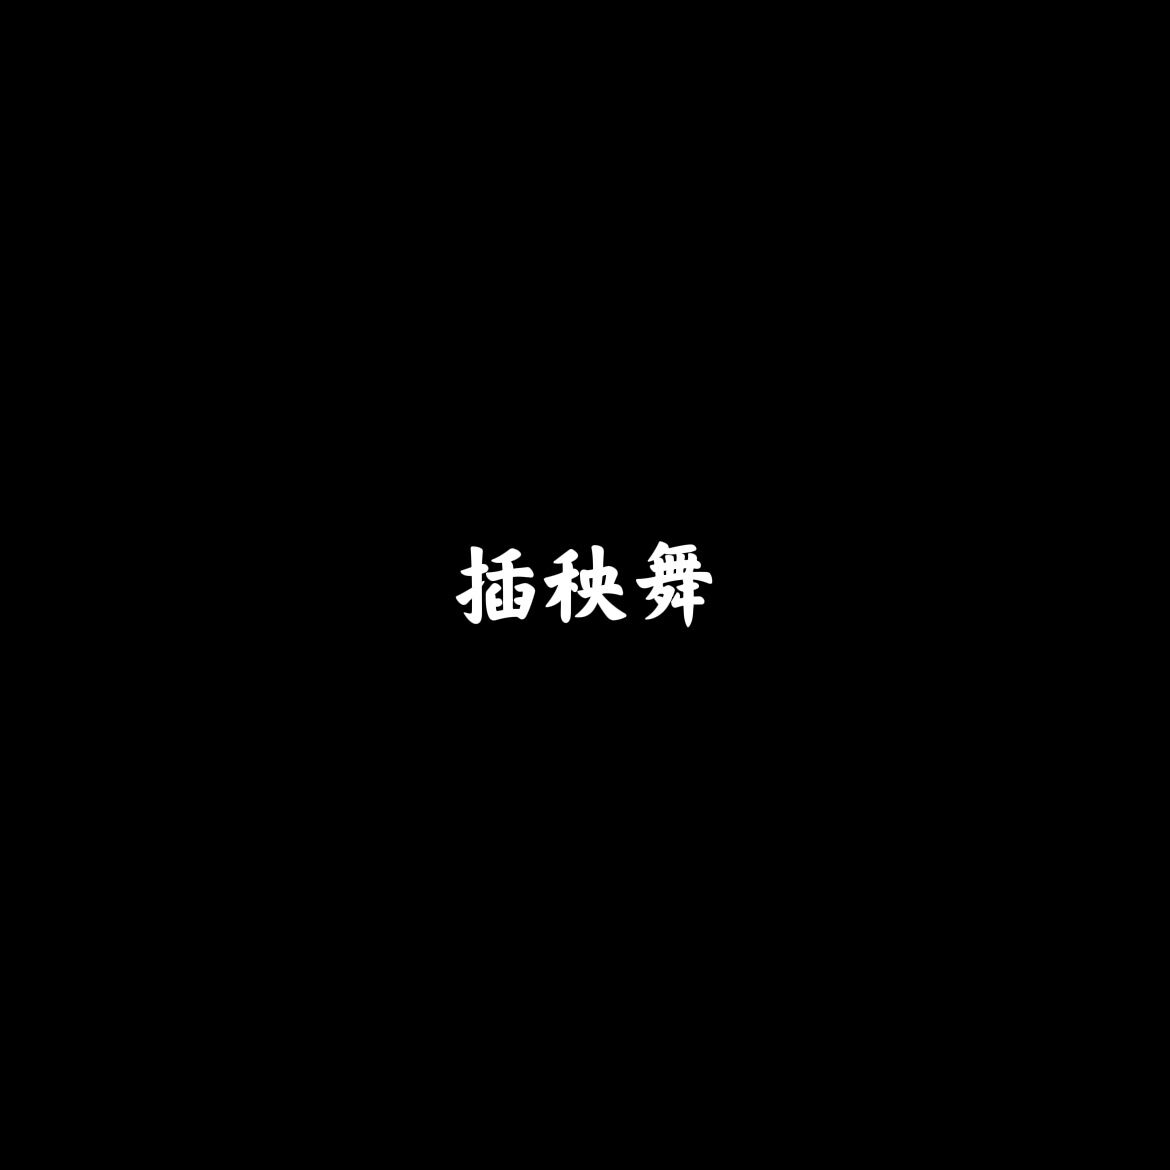 噔噔噔 - FlamelKing福林先生 - 单曲 - 网易云音乐